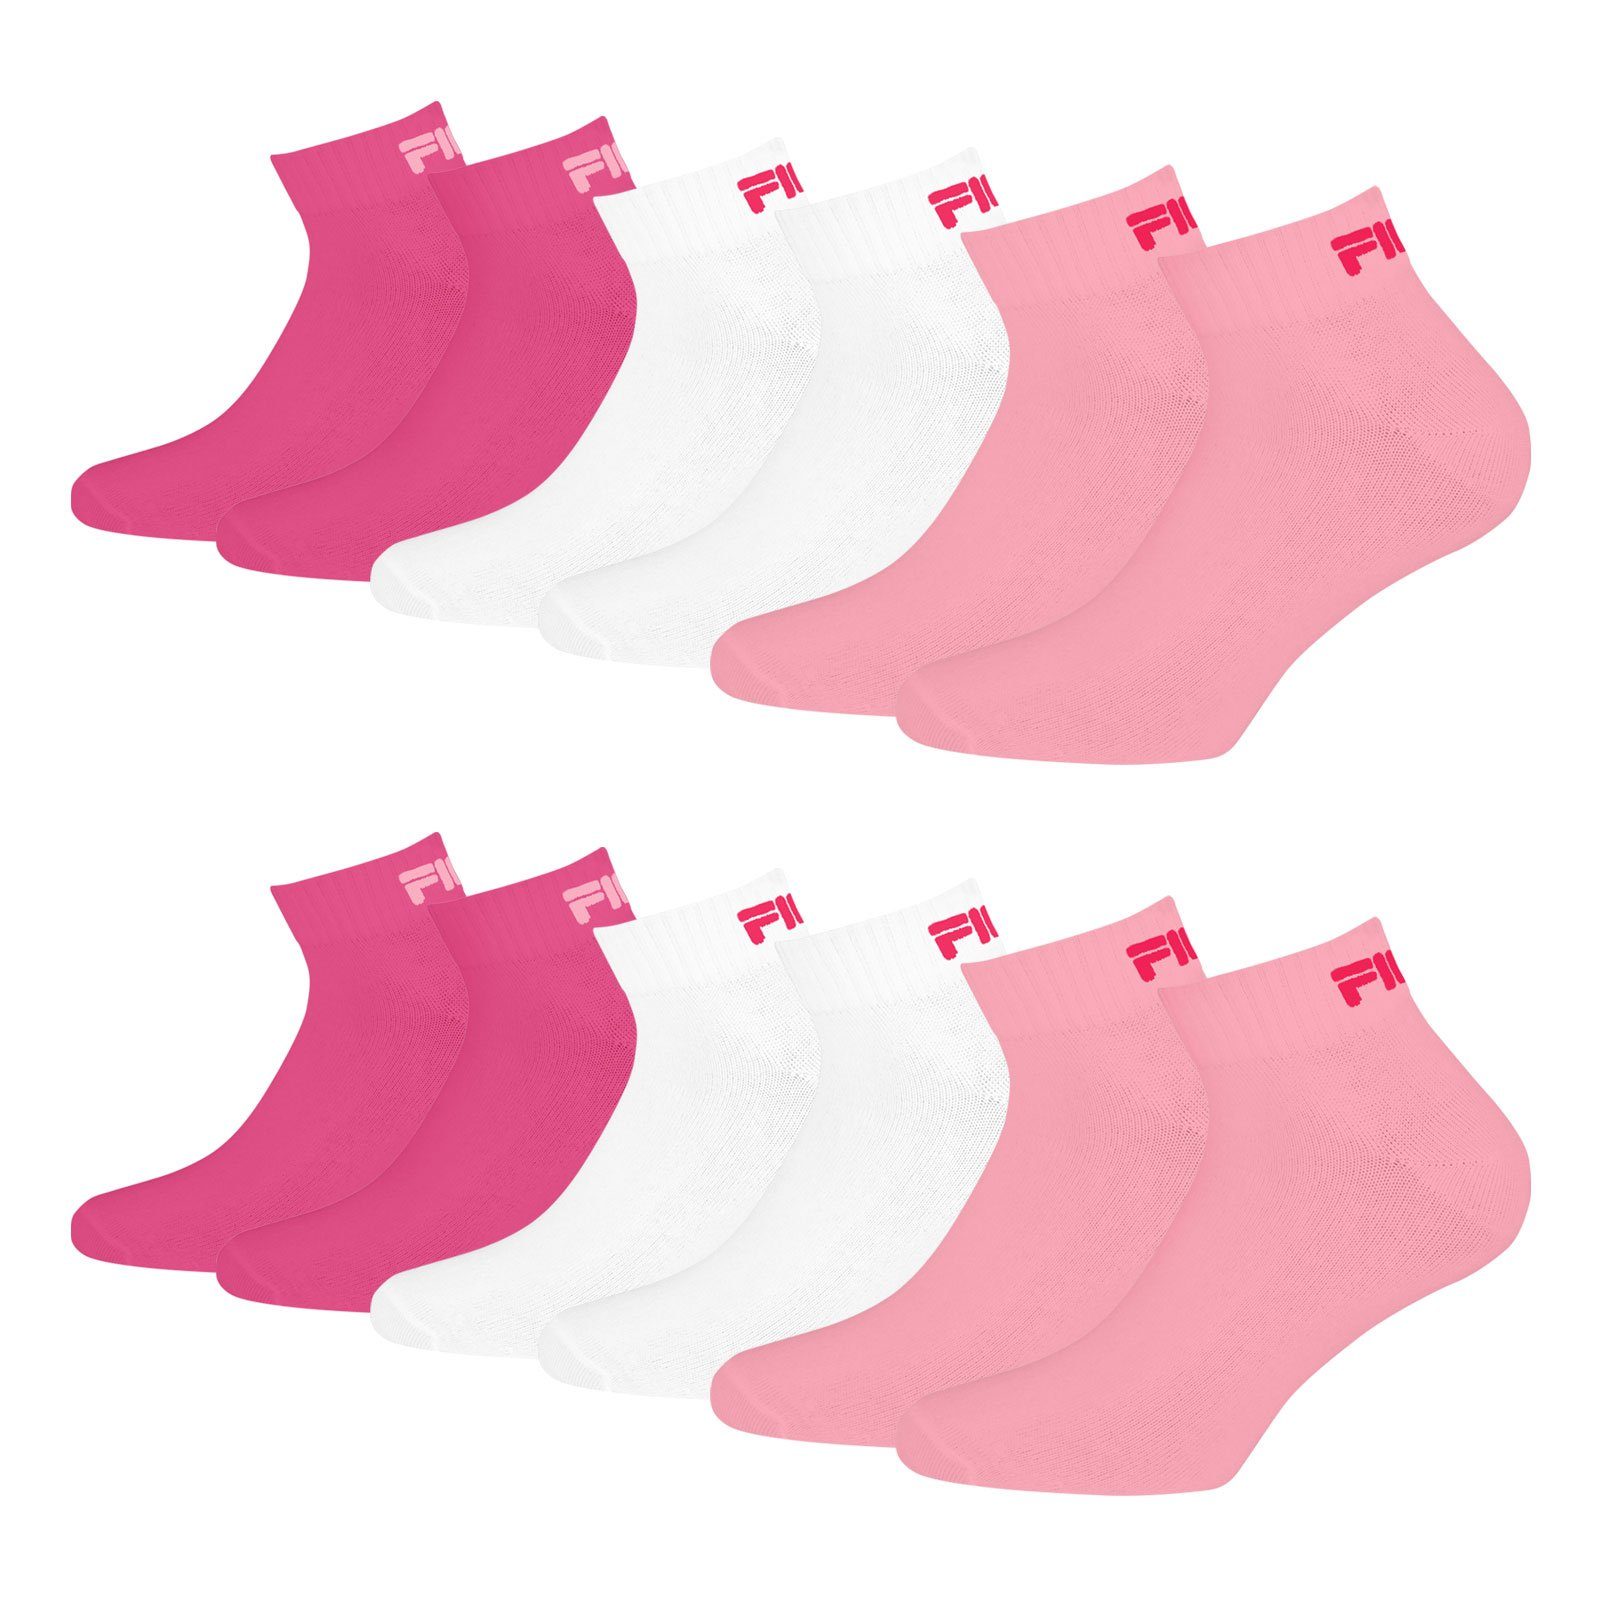 Quarter mit (6-Paar) Rippbündchen 806 panter Sportsocken weichem pink Fila Socken